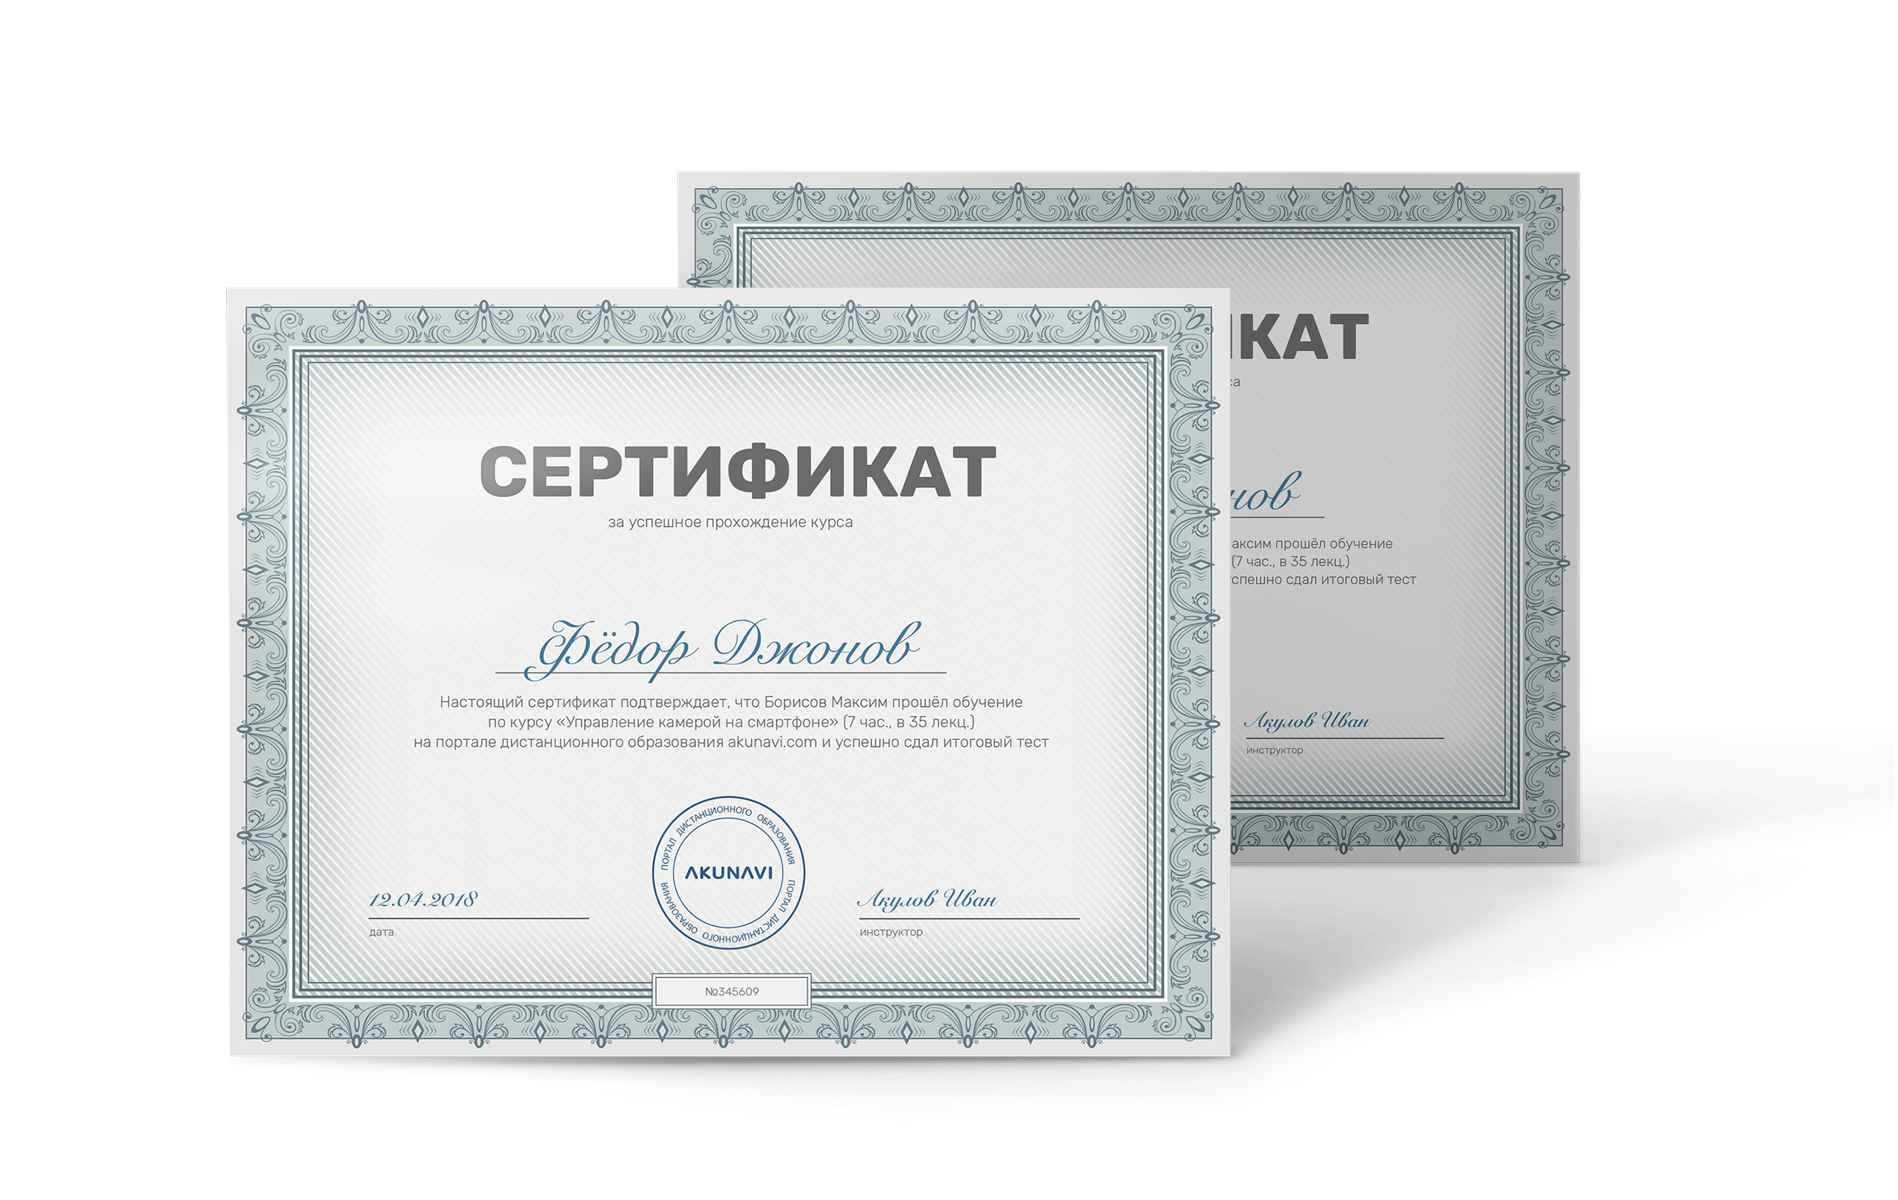 Распечатка Сертификатов: Простое Руководство для Любого